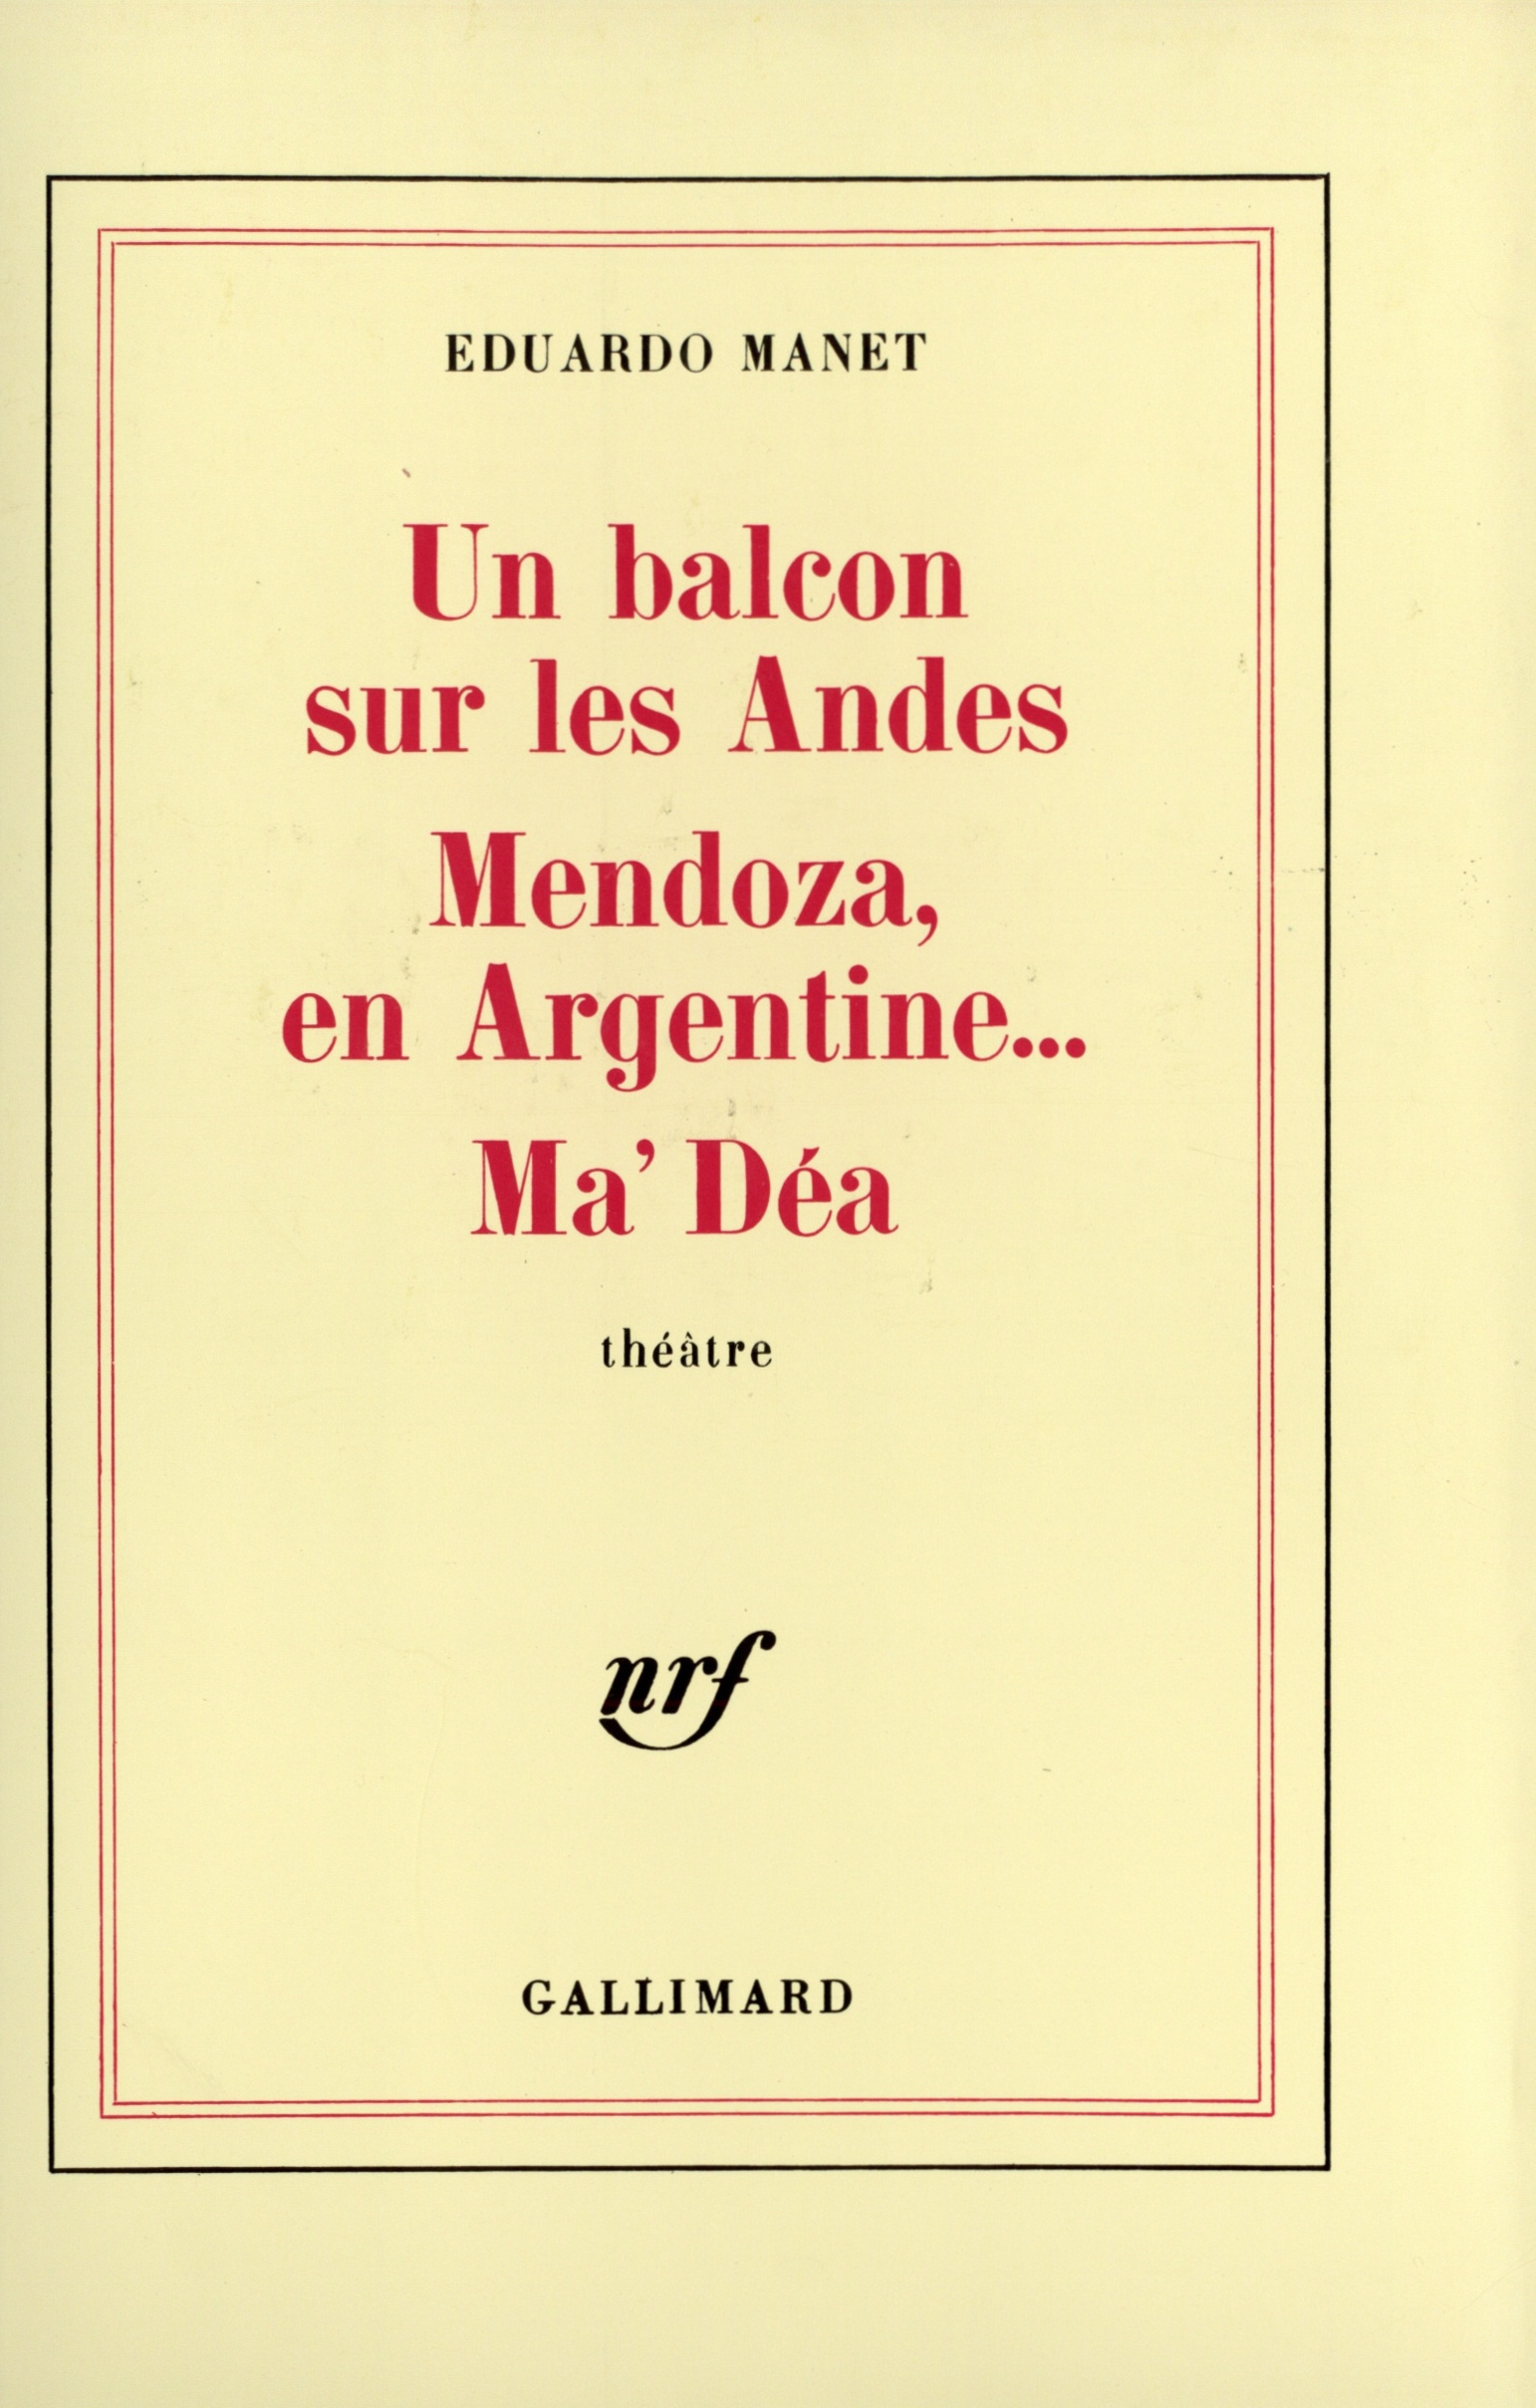 Un Balcon sur les Andes - Mendoza en Argentine... - Ma'Déa (9782070705269-front-cover)